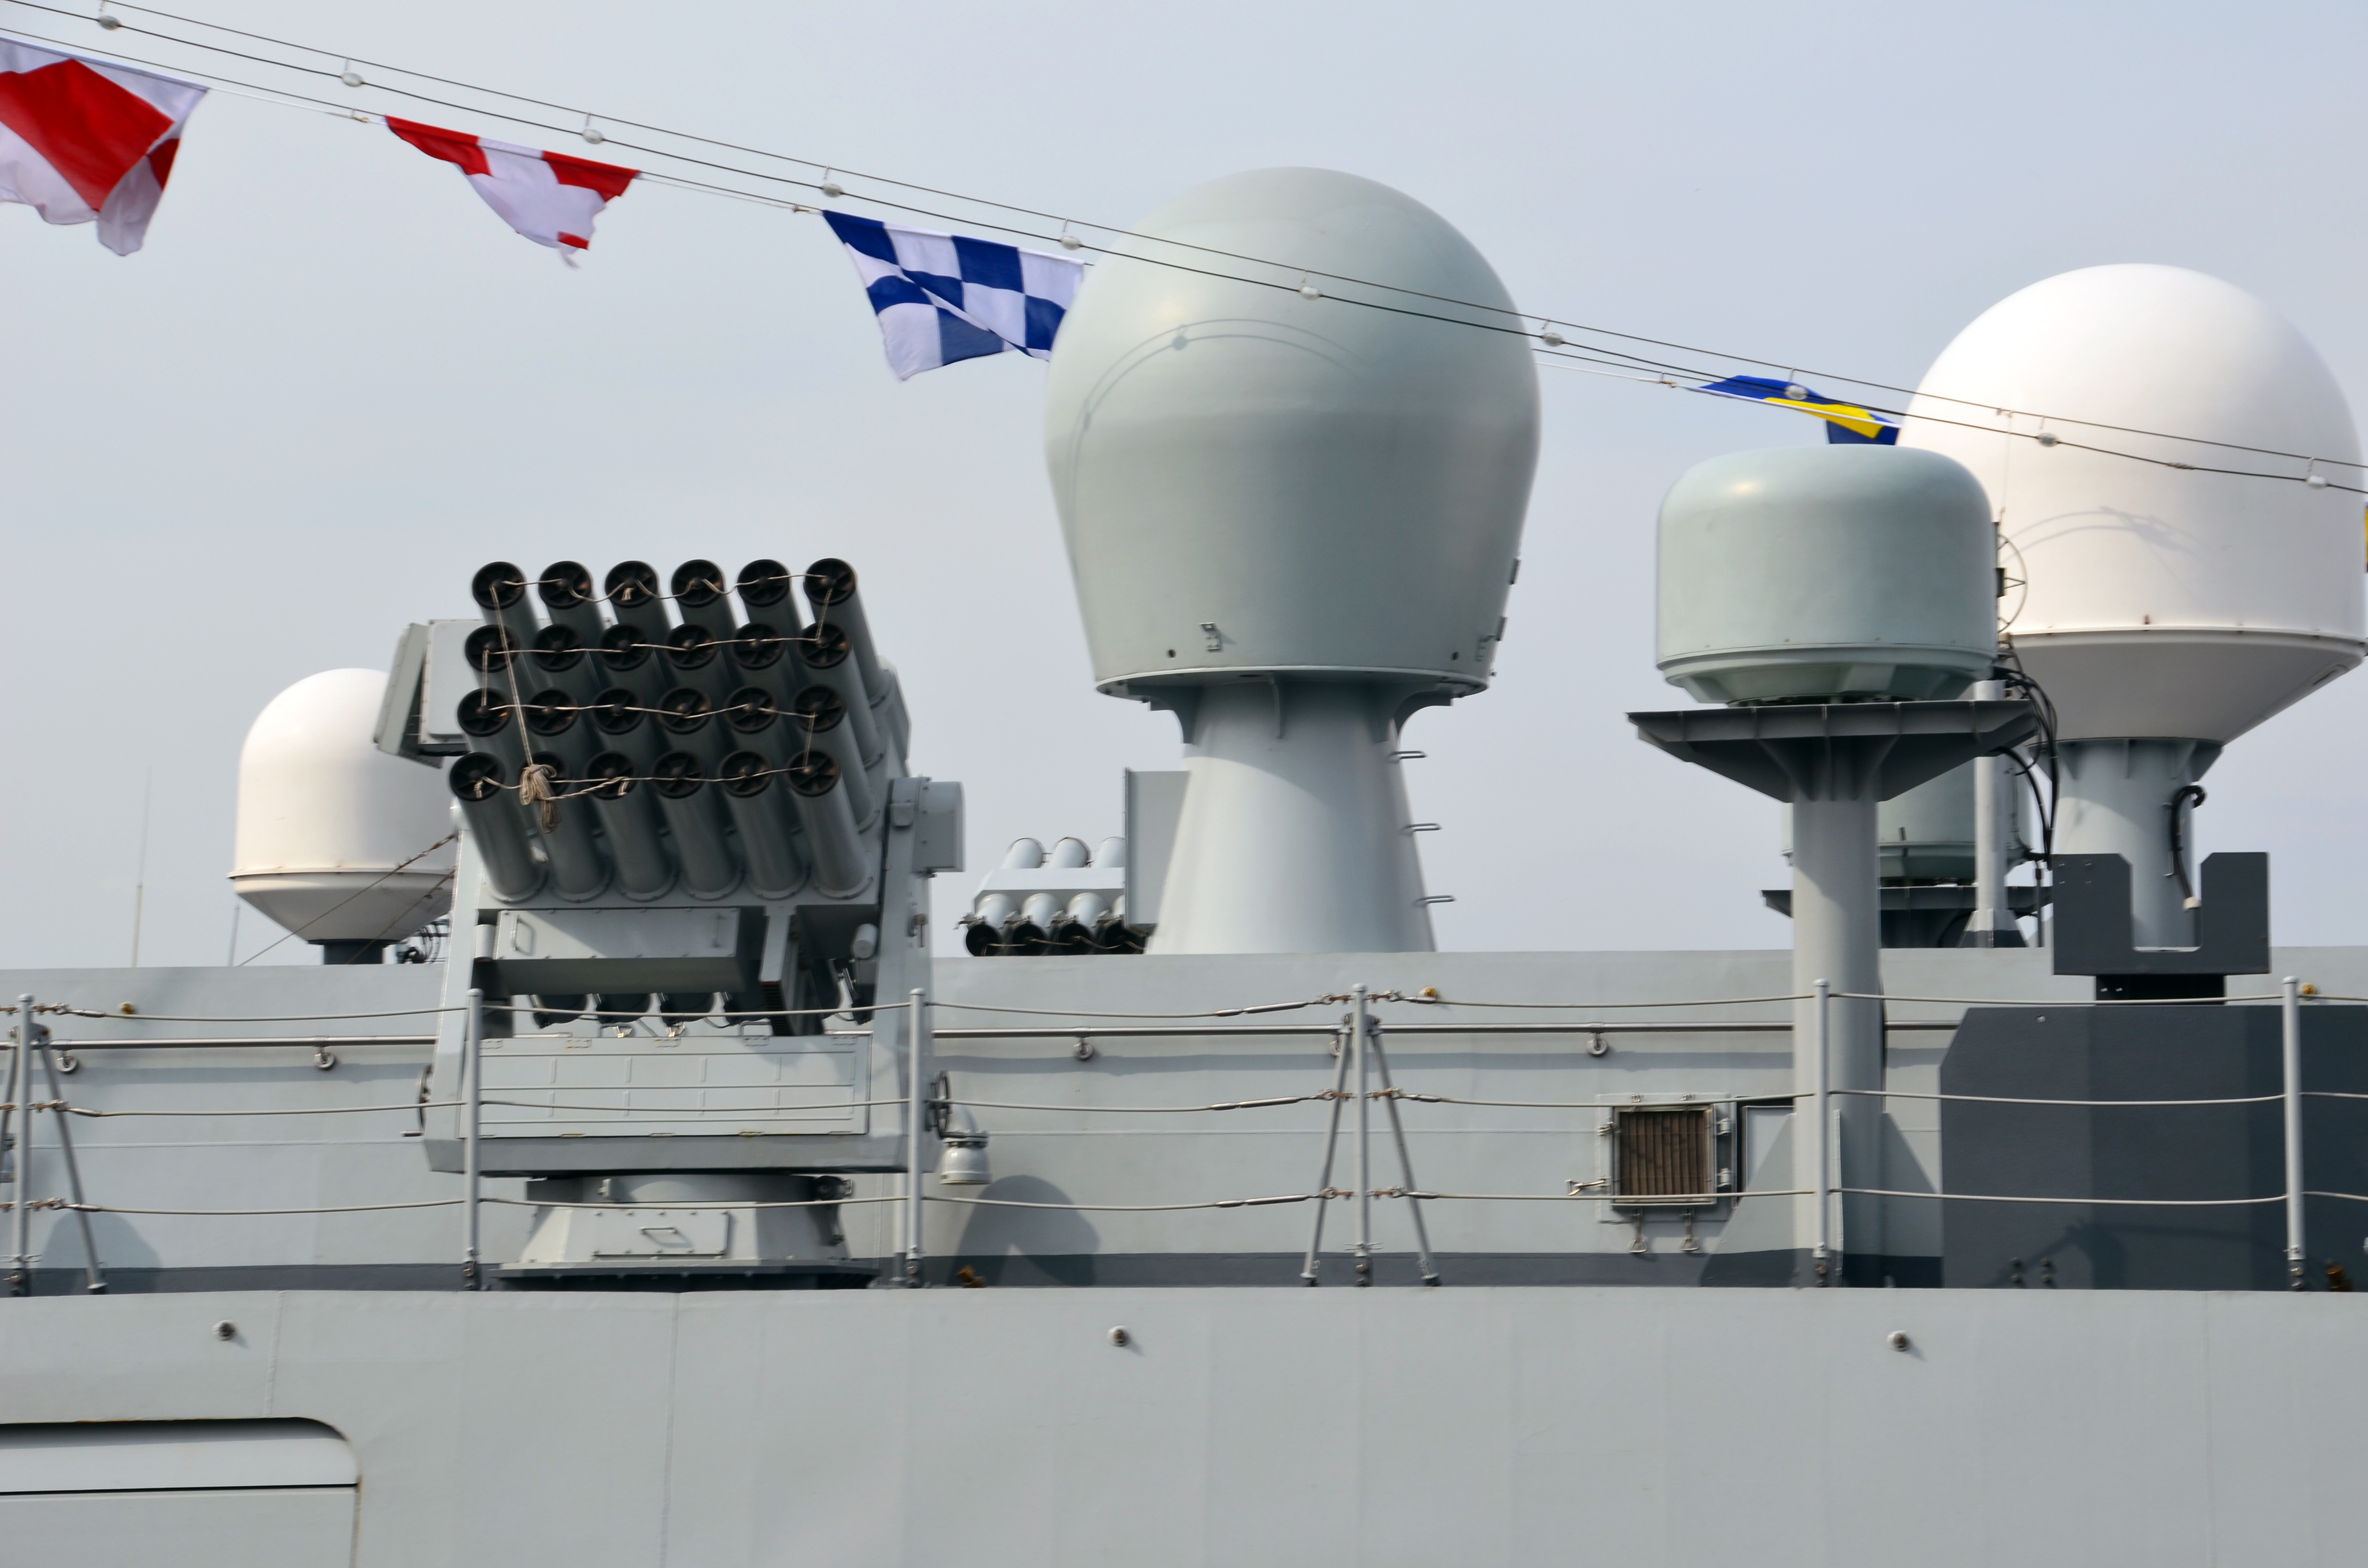 ▲24聯裝H/RJZ-726-4A型干擾發射裝置在該艦的左、右側各裝置乙座，圖中在干擾發射裝置後方有不同功能的雷達。